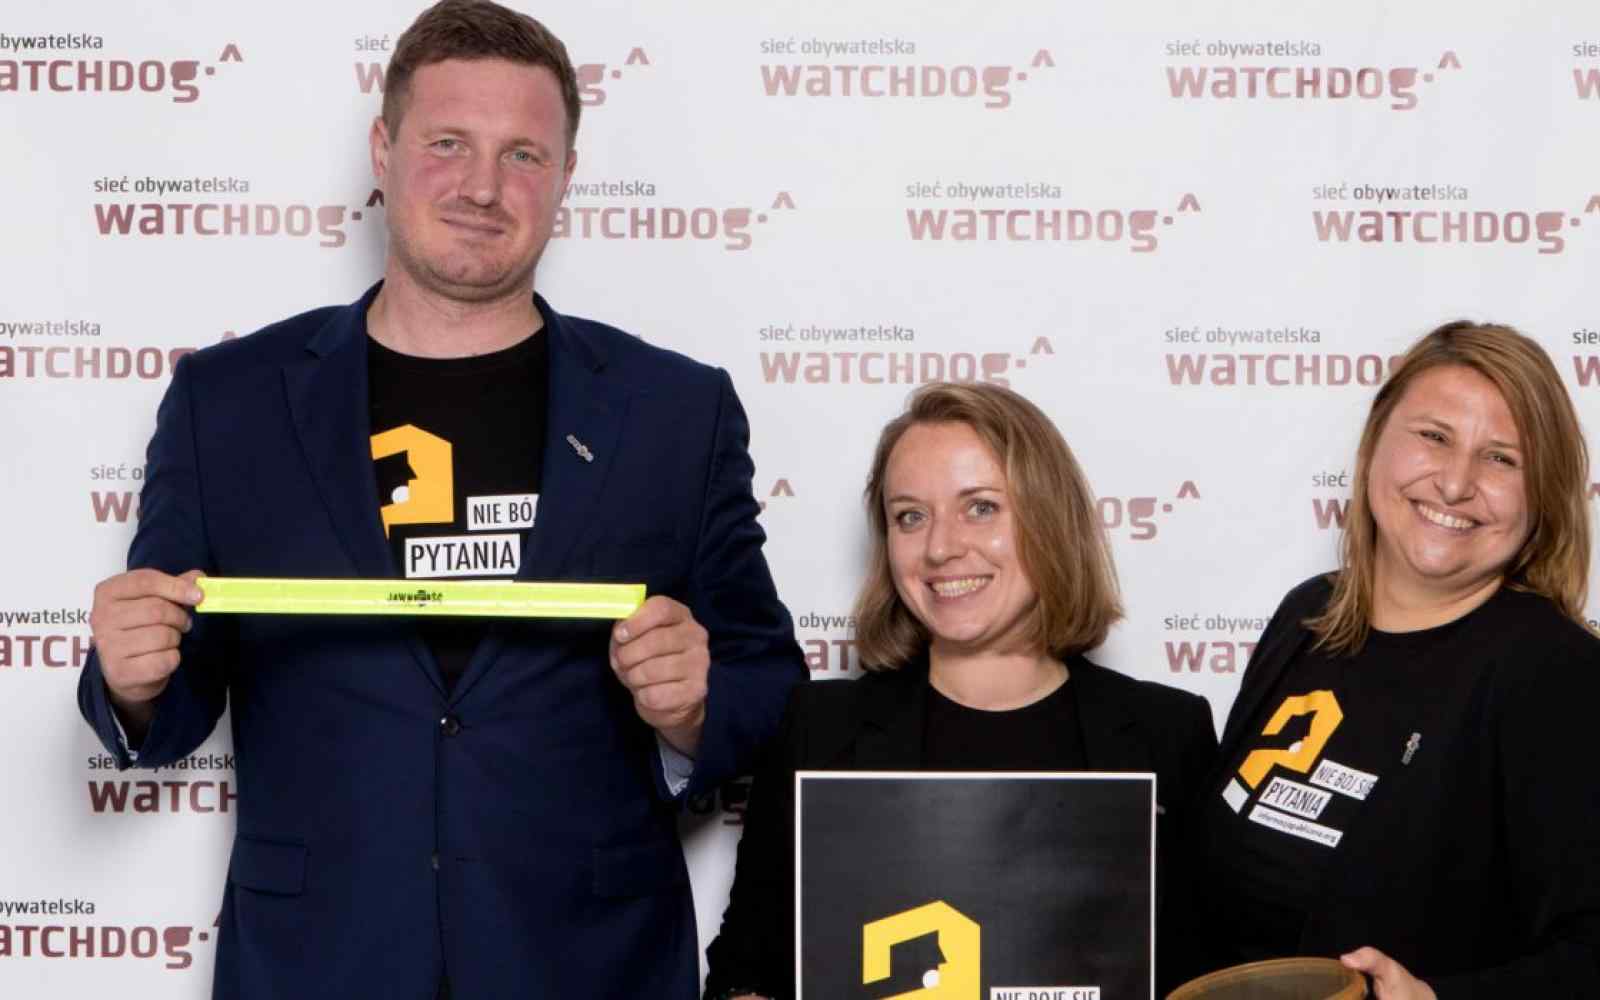 Zdjęcie Kasi Batko-Tołuć i dwóch innych osób na tle ścianki zdjęciowej z logo "sieć obywatelska - watchdog"